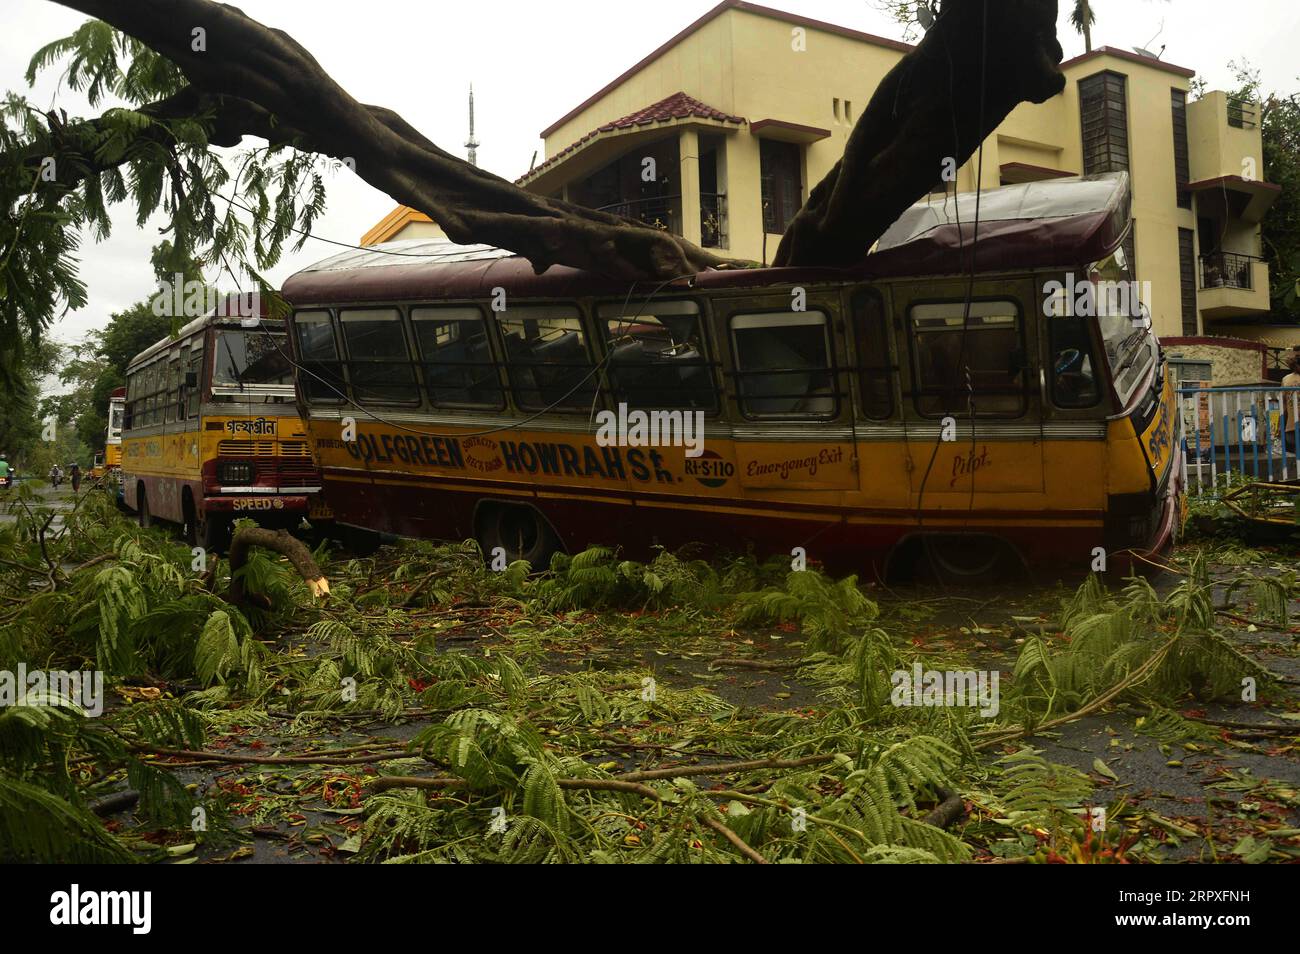 200521 -- CALCUTTA, 21 maggio 2020 -- un albero sradicato cade su un mini bus durante la violenta tempesta ciclonica Amphan a Calcutta, India, il 21 maggio 2020. Il primo ministro indiano dello stato orientale del Bengala Occidentale, Mamata Banerjee, ha dichiarato giovedì che 72 persone sono state uccise nel suo stato a causa della grave tempesta ciclonica Amphan. La tempesta ciclonica che innesca venti ventosi fino a 190 km/h e la pioggia ha colpito il Bengala occidentale e l'Odisha costiera mercoledì sera, appiattendo case improvvisate e sradicando pali e alberi elettrici. Str/Xinhua INDIA-CALCUTTA-TEMPESTA AMPHAN Stringer PUBLICATIONxNOTxINxCHN Foto Stock